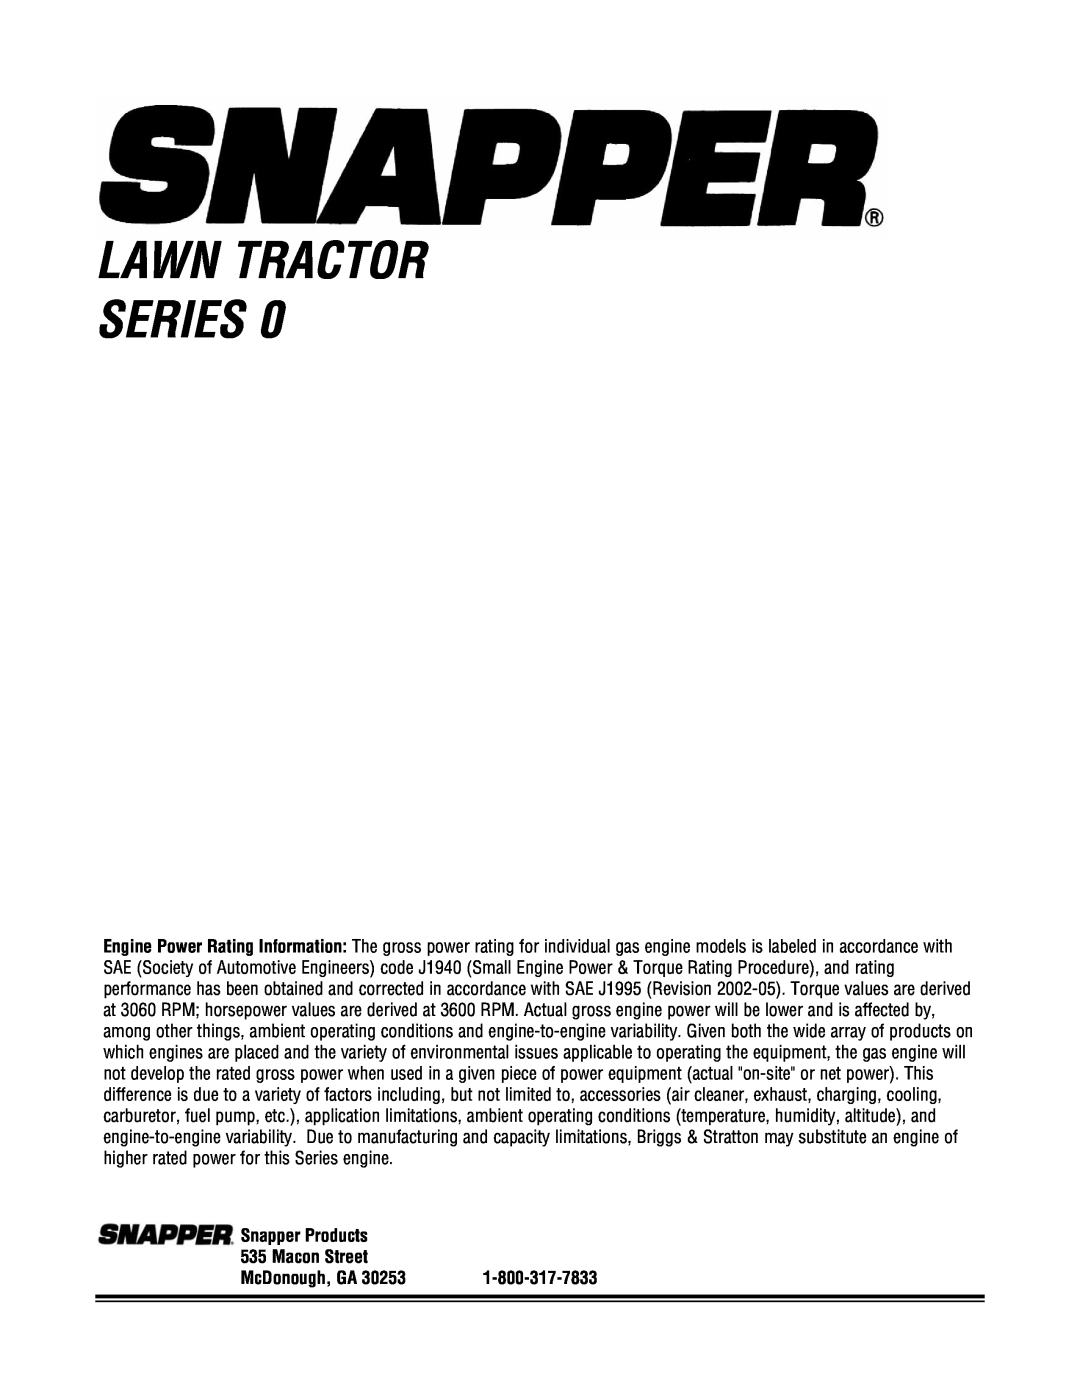 Snapper LT195420, LT23460, LT24520, SLT23460, SLT24520, CLT23460, CLT24520 Lawn Tractor Series, Snapper Products 